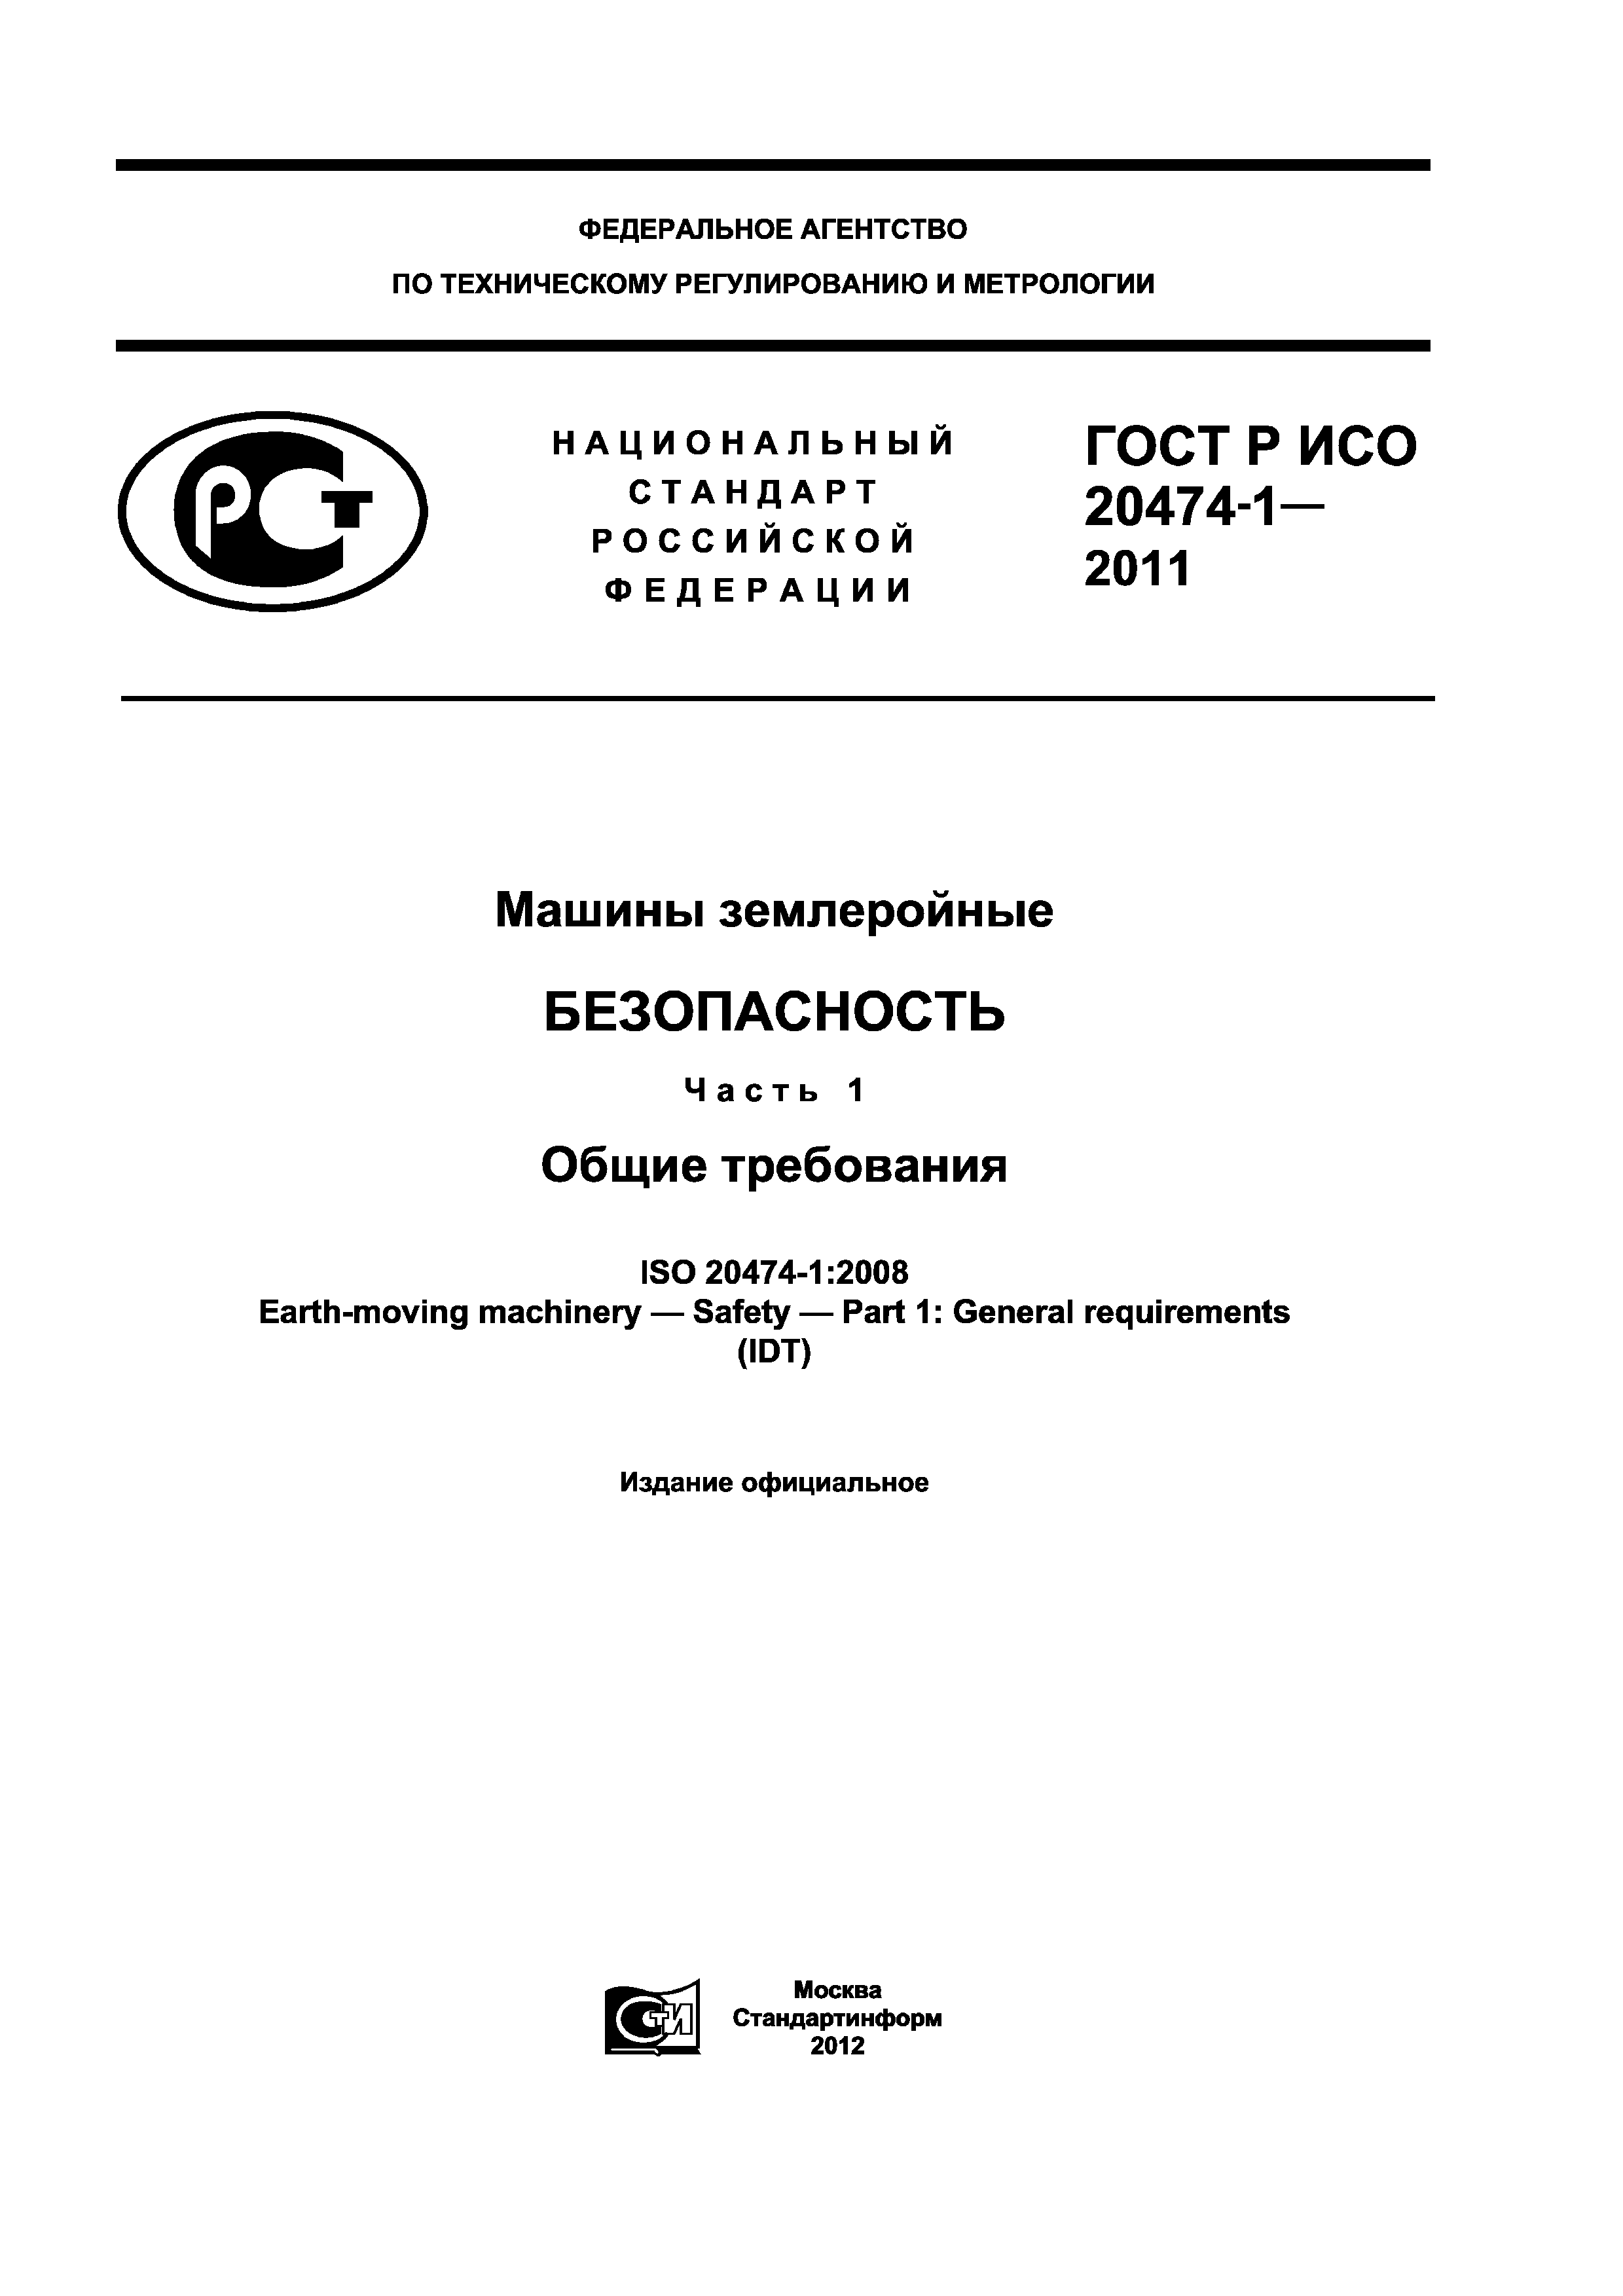 ГОСТ Р ИСО 20474-1-2011